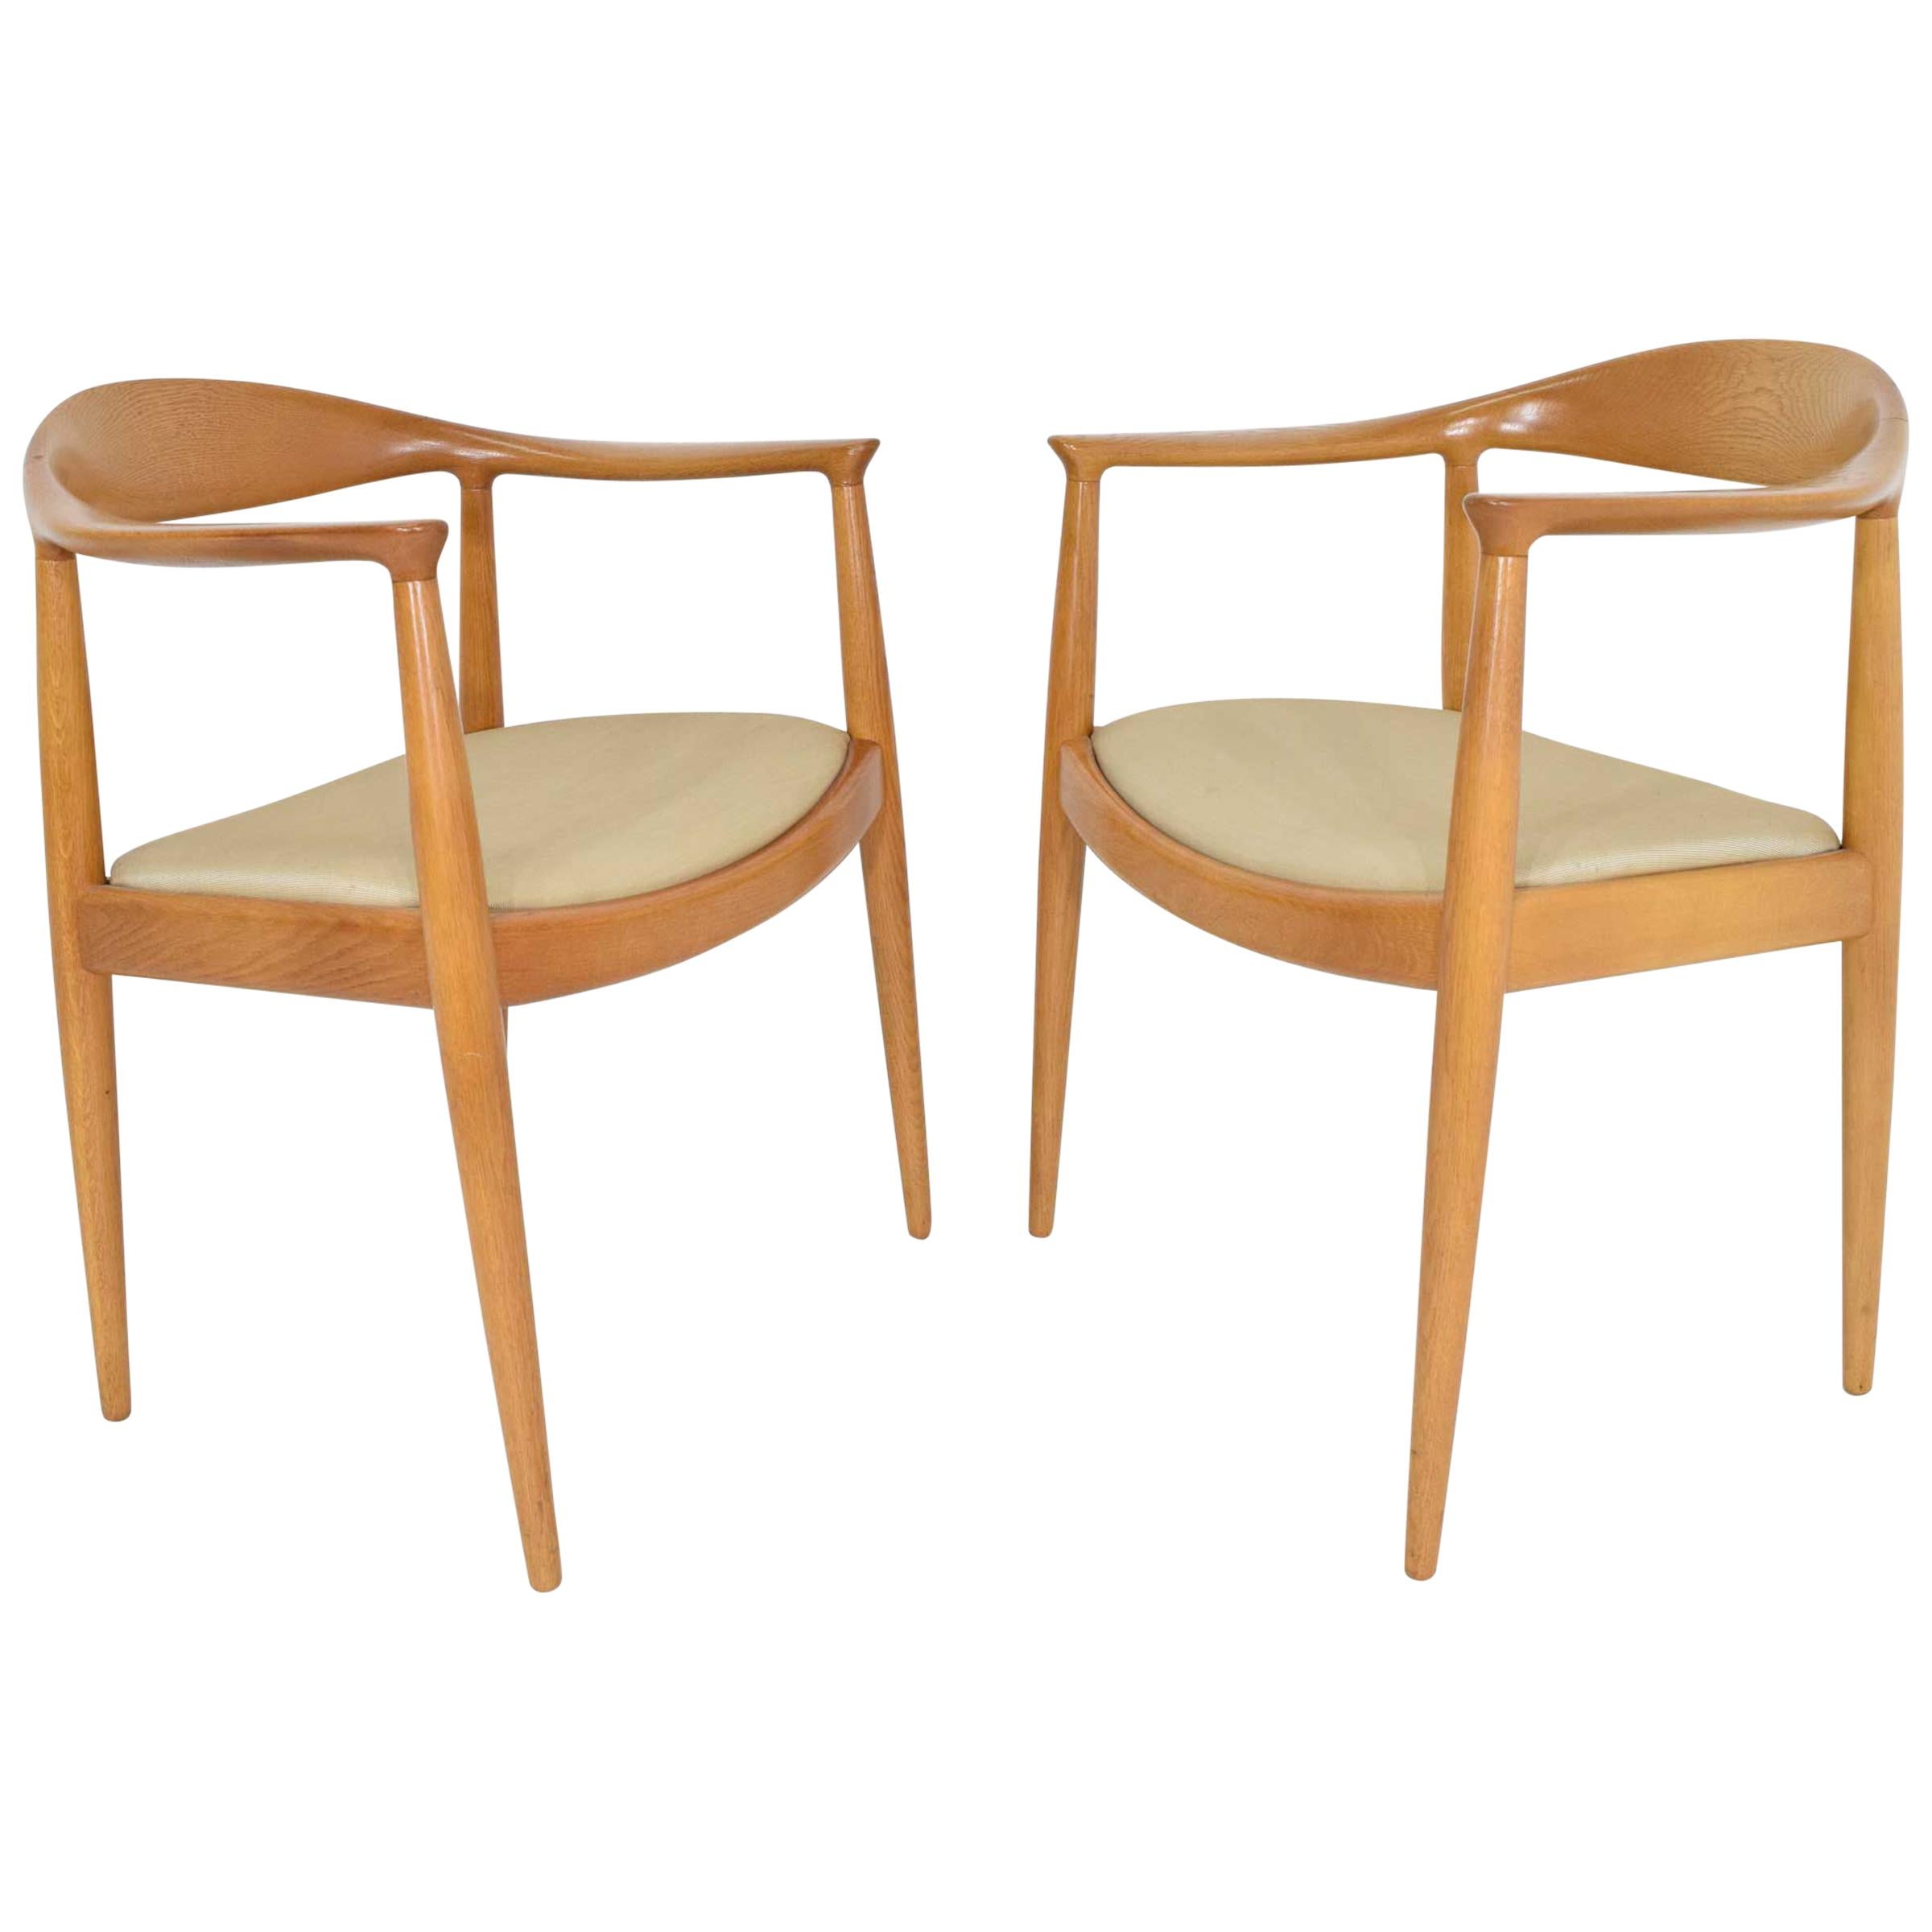 Pair of Hans Wegner Round Chairs